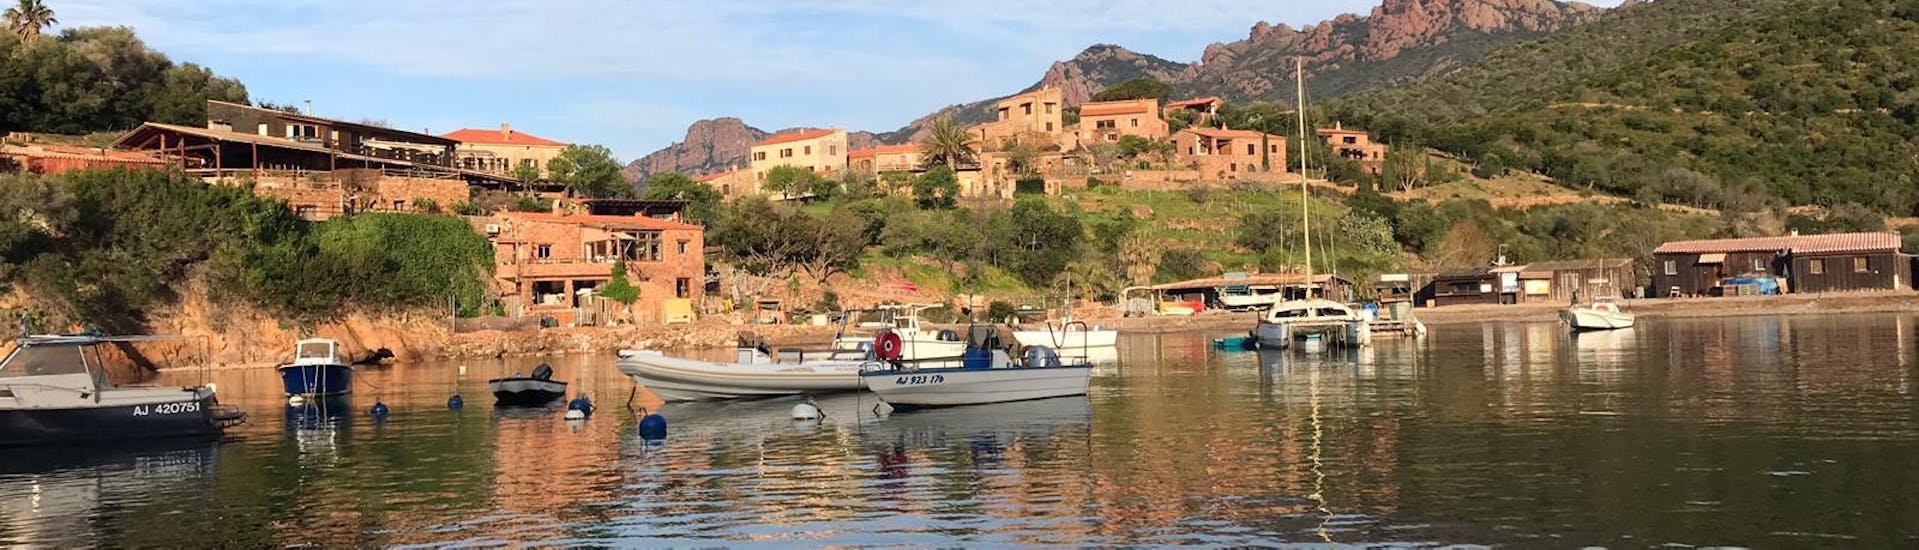 Blick auf das Dorf während der Privaten Bootstour nach Scandola mit Zwischenstopp in Girolata.